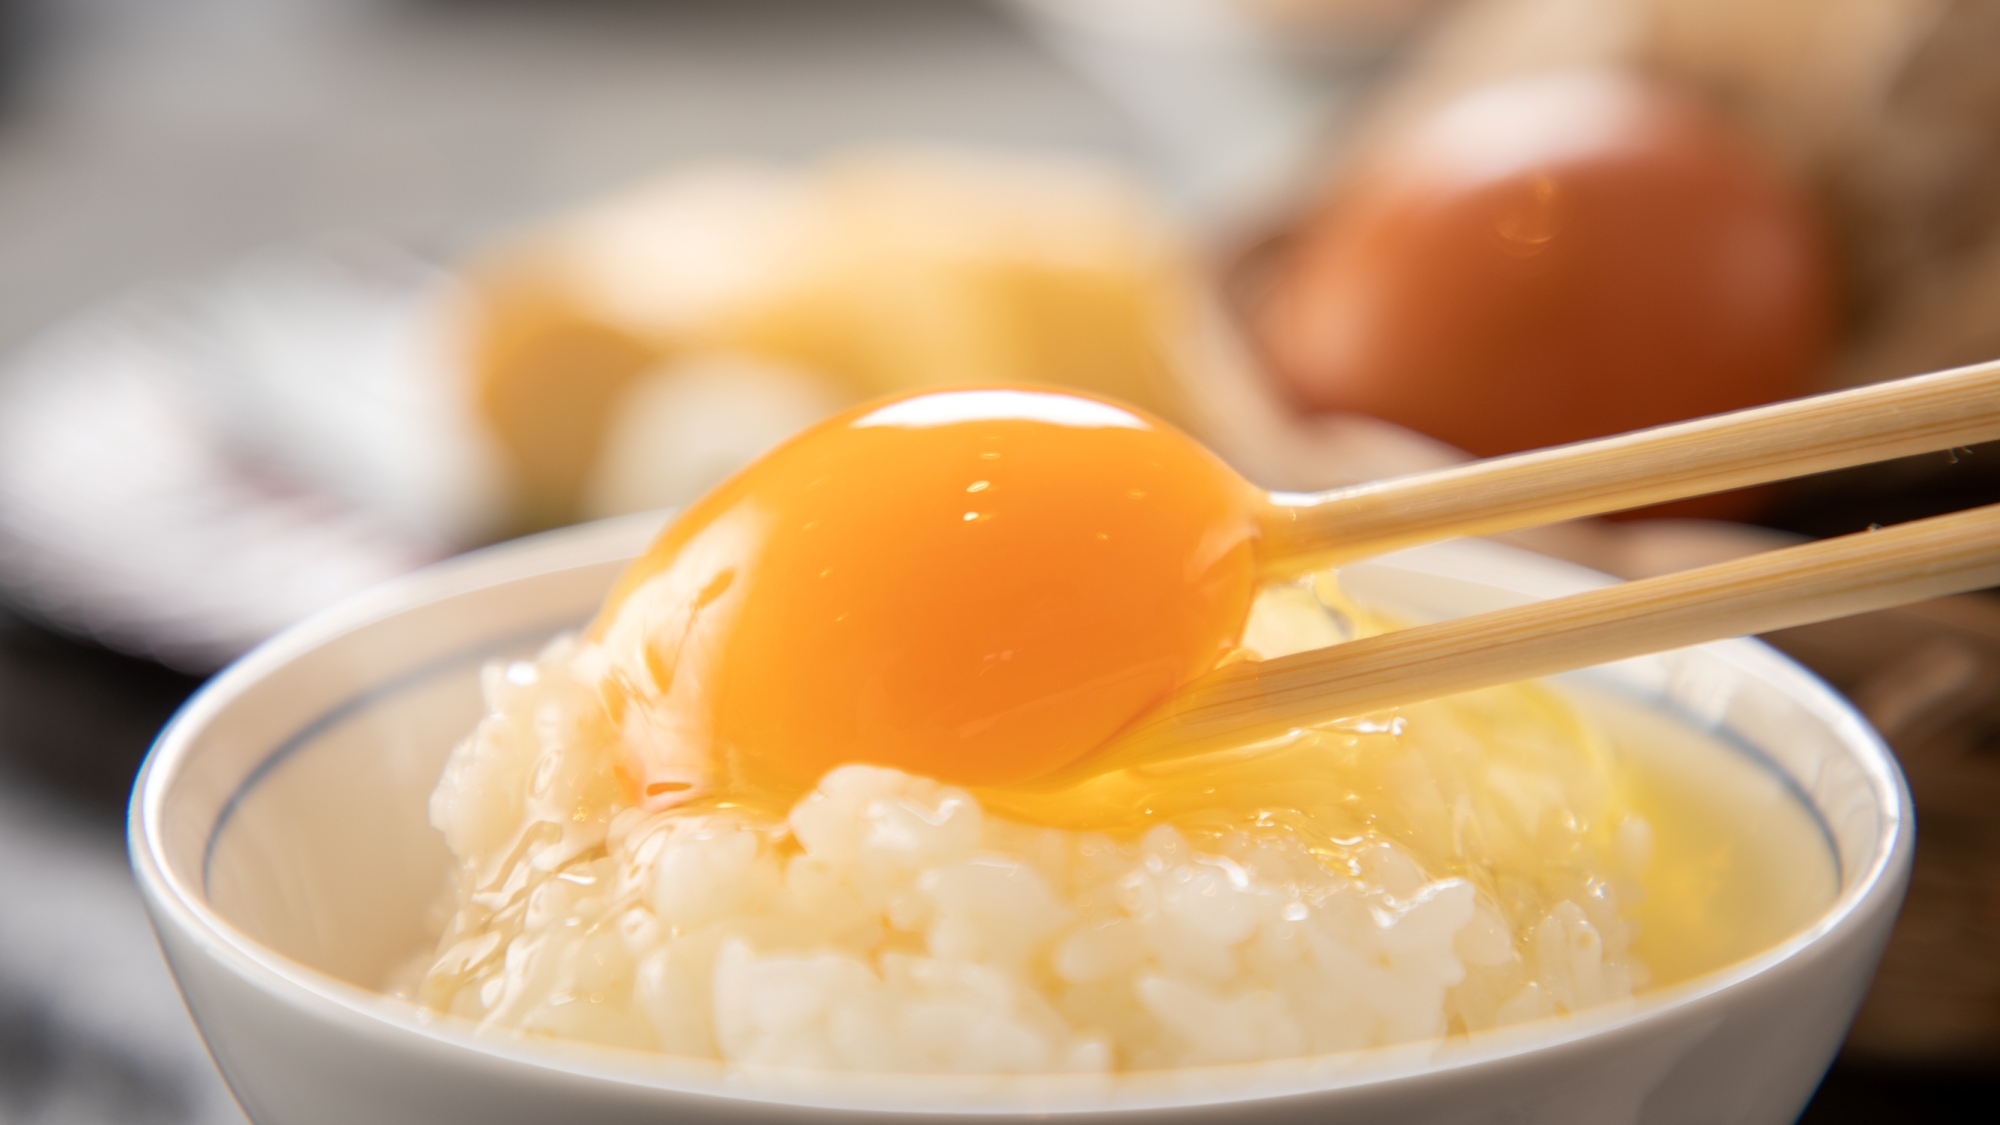 【朝食イメージ】コッコファーム新鮮卵の卵かけご飯